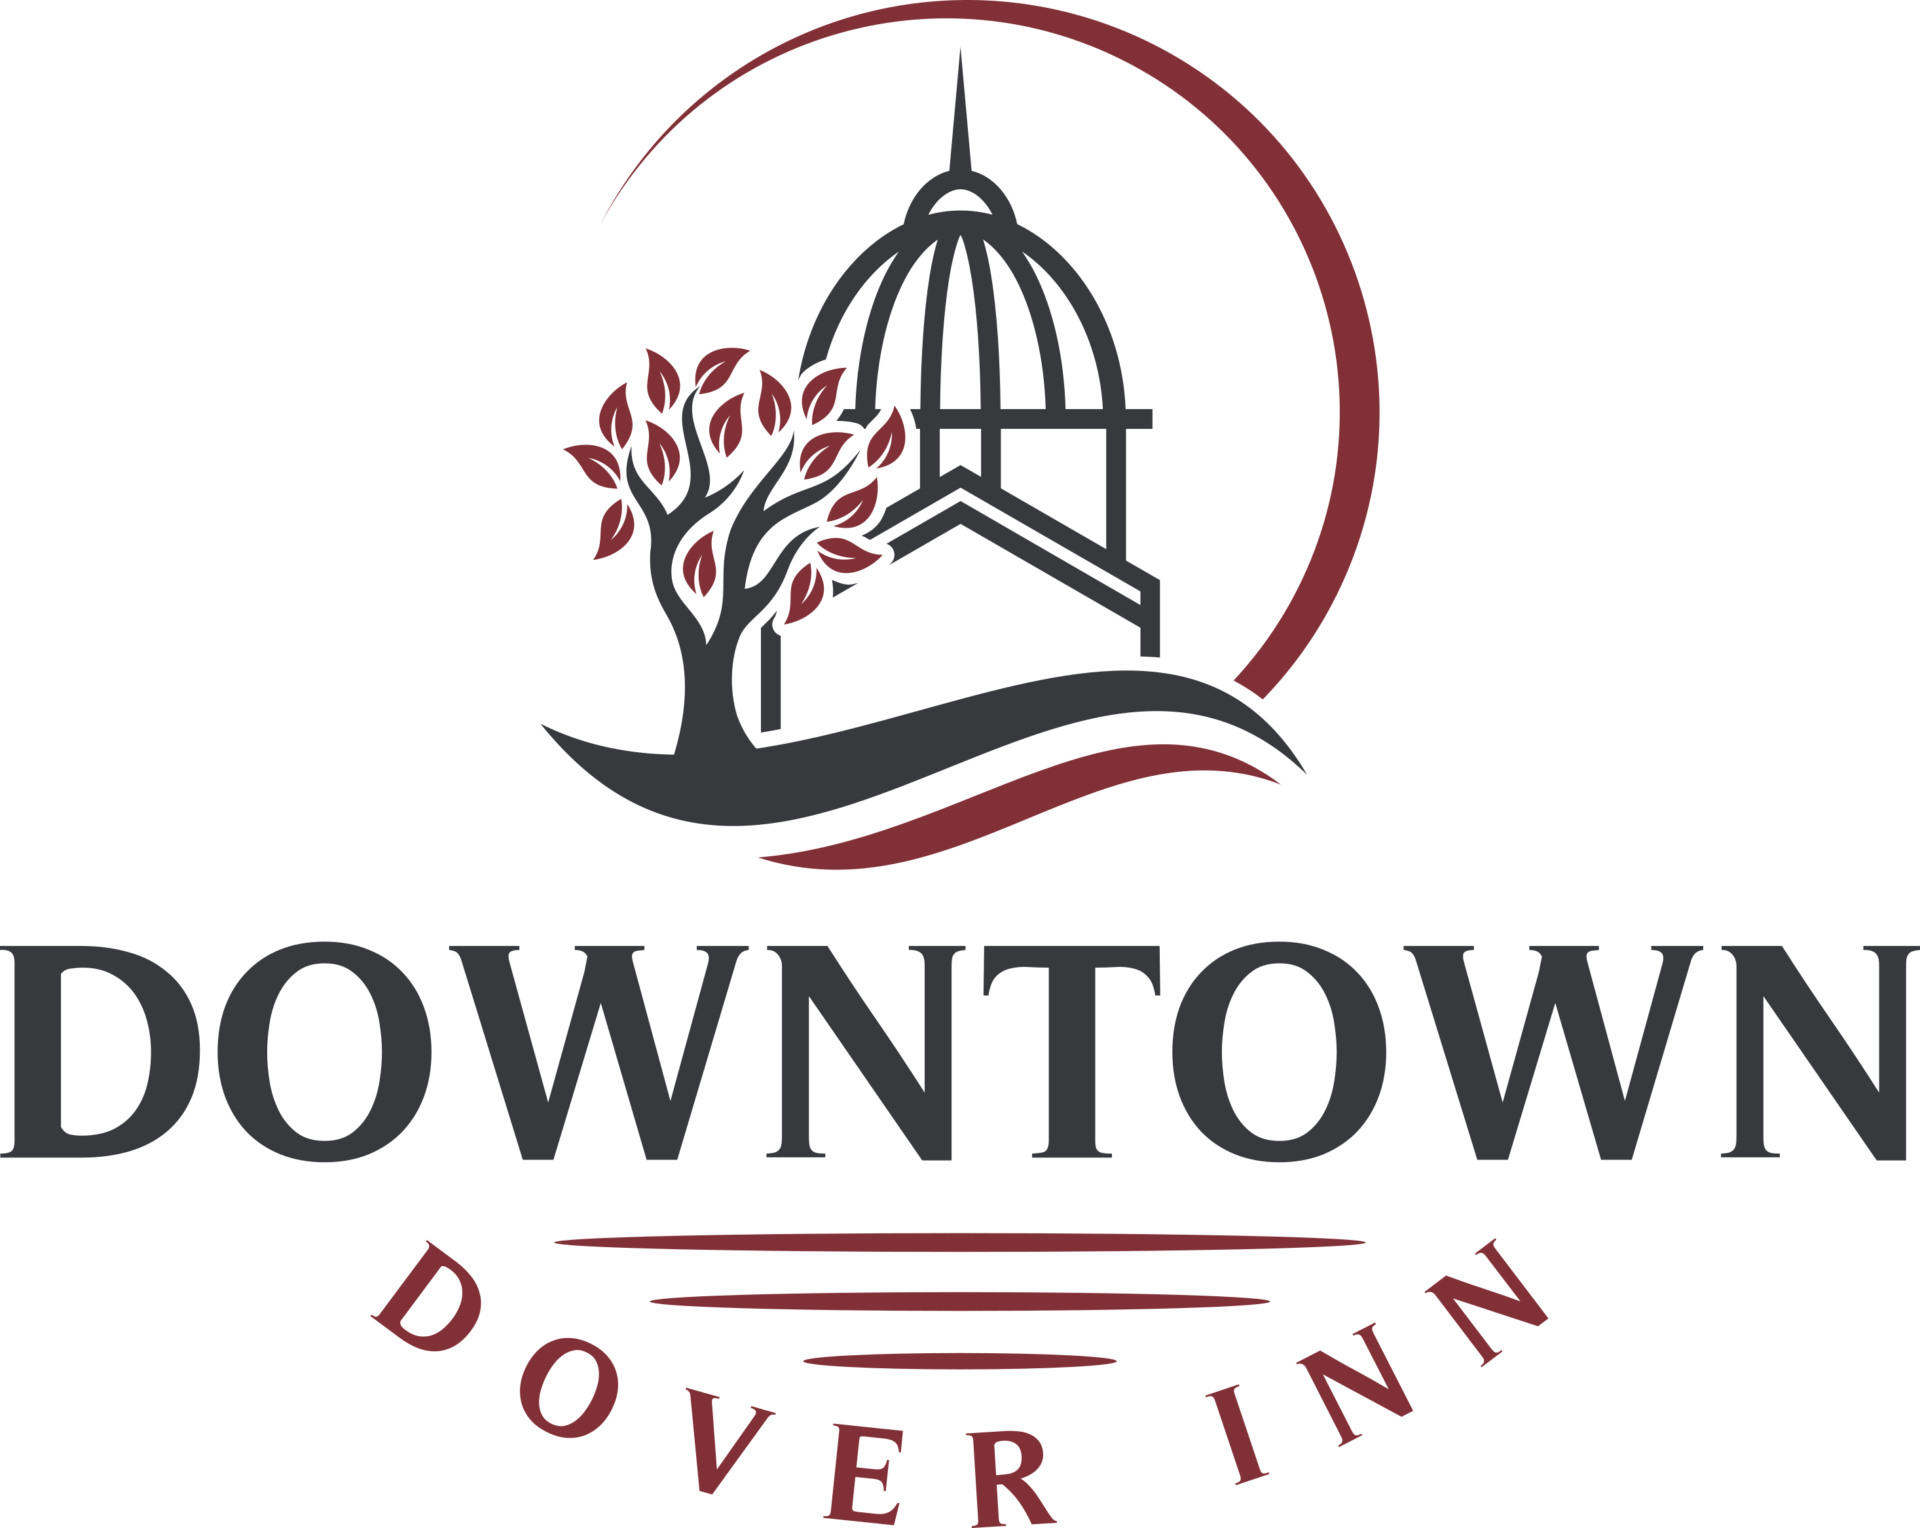 Downtown Dover Inn